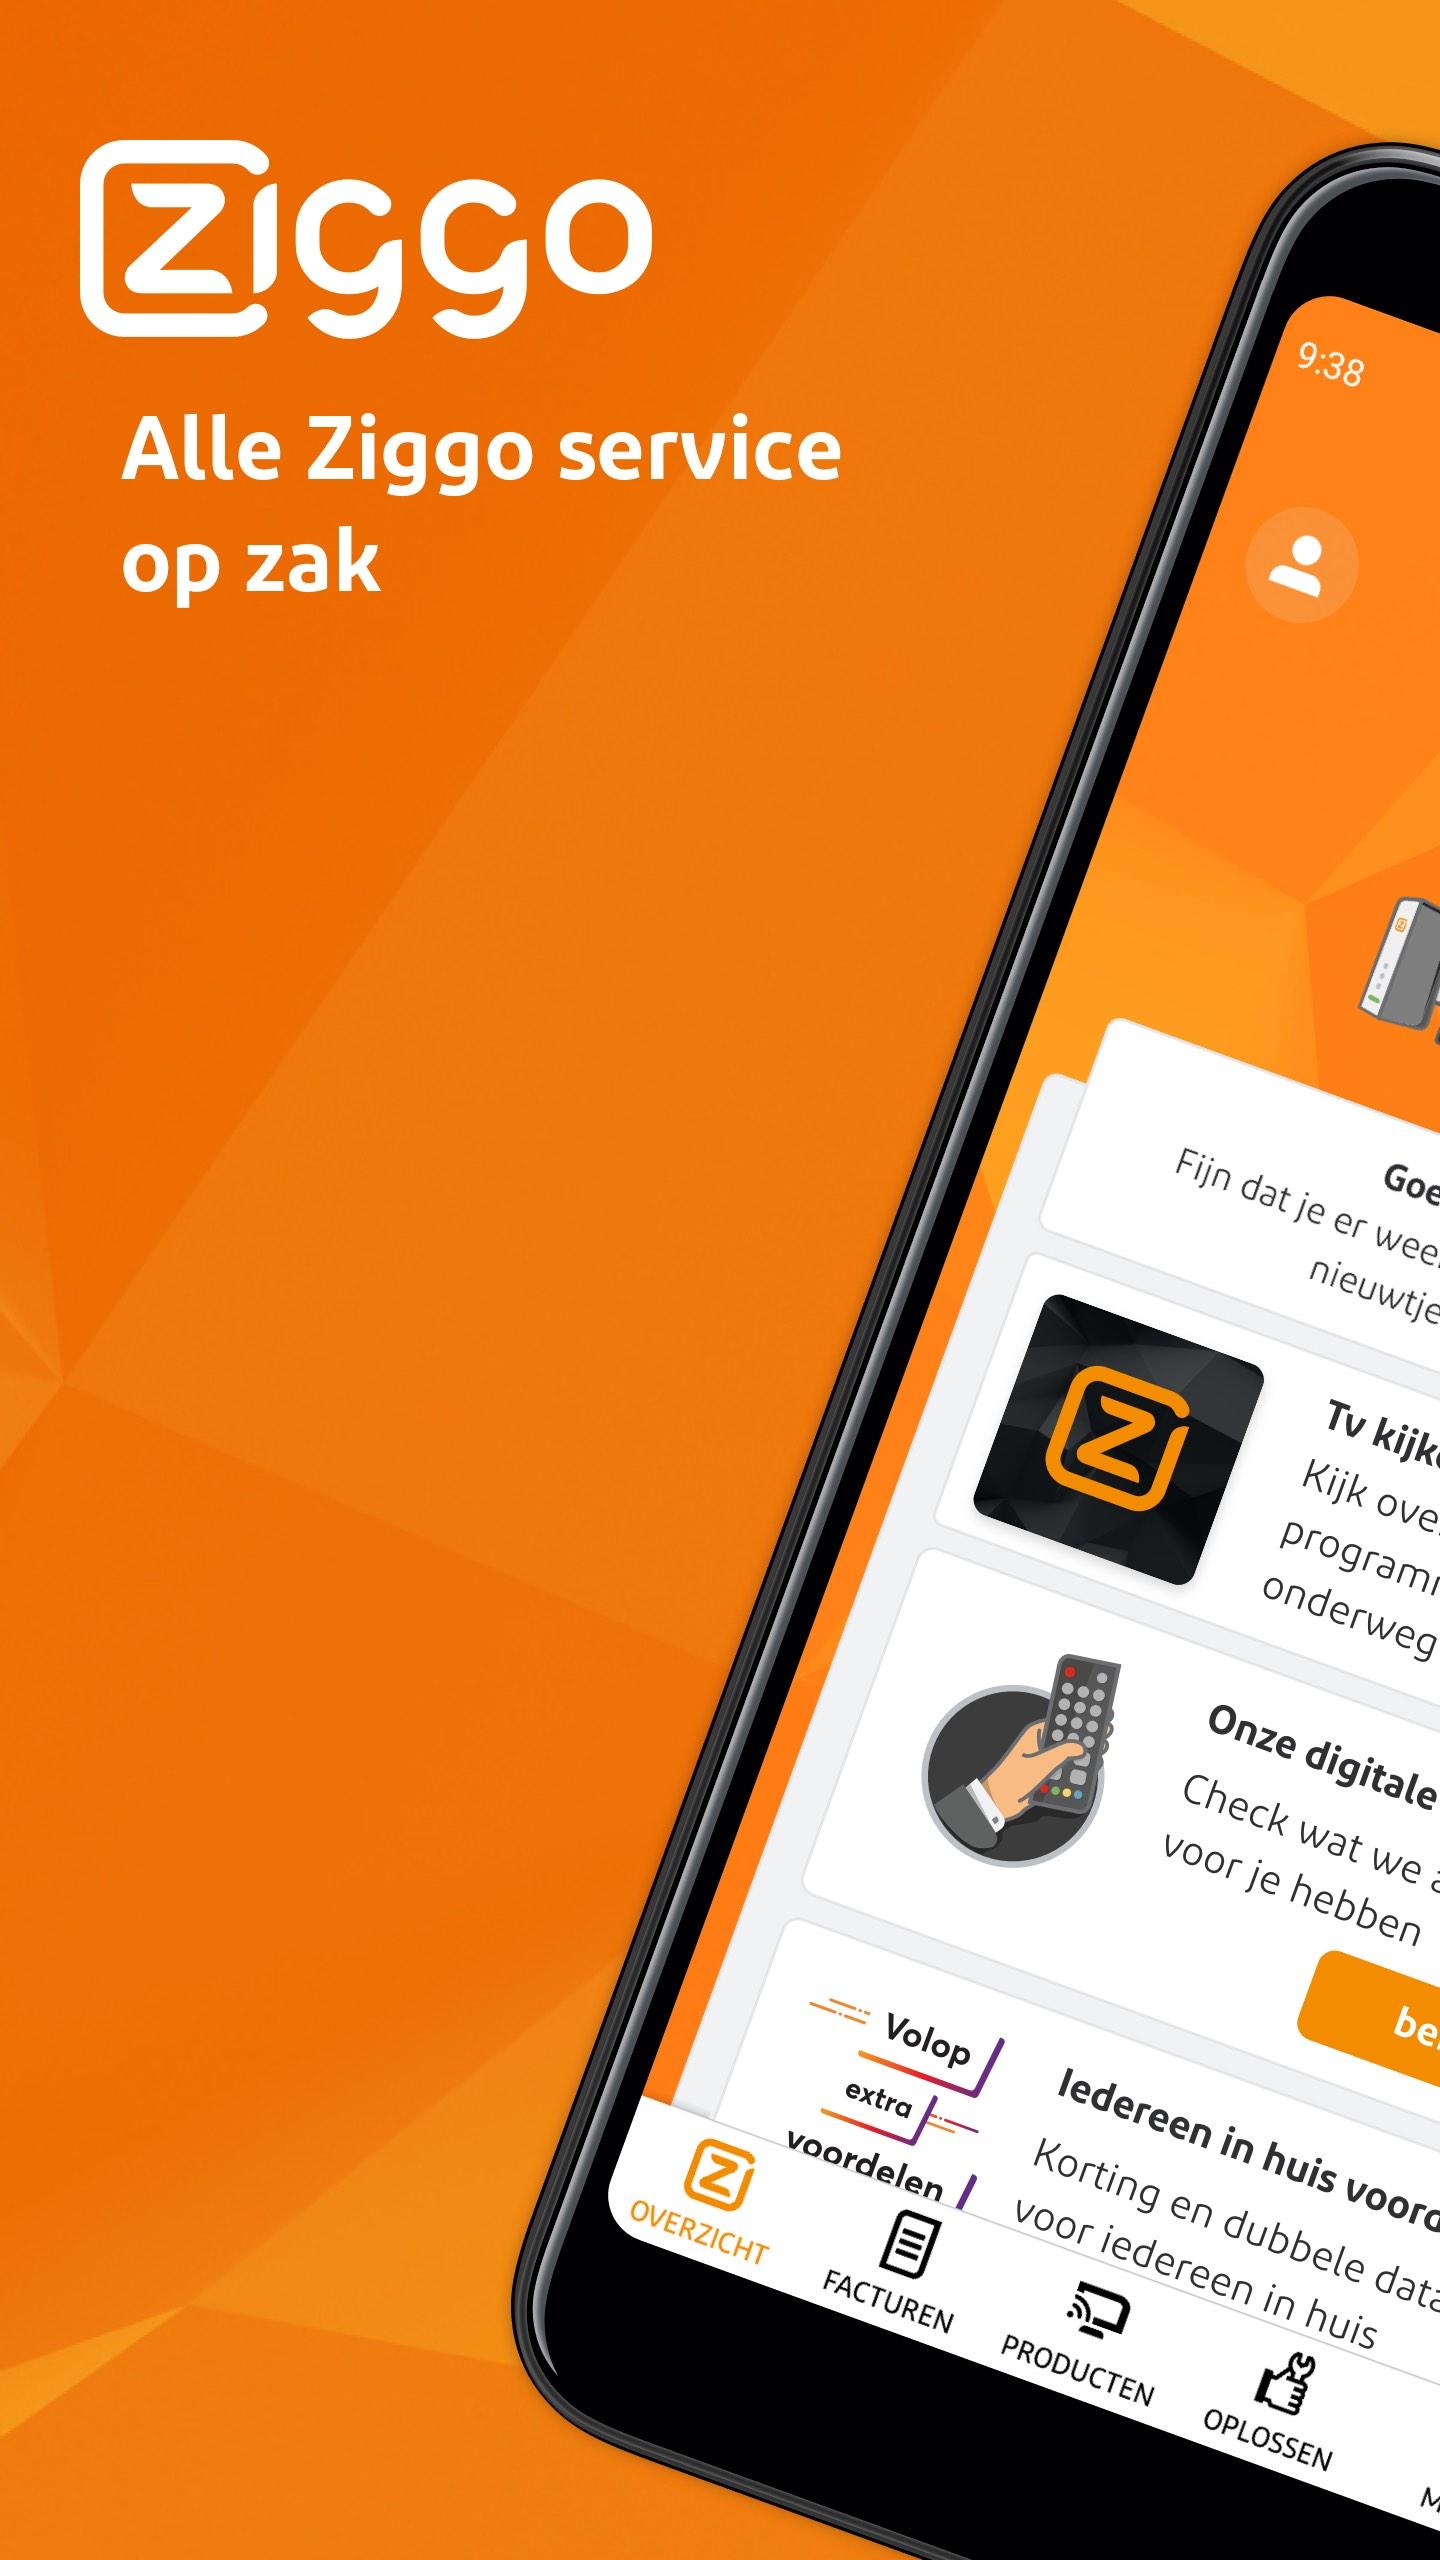 Mijn Ziggo for Android - APK Download